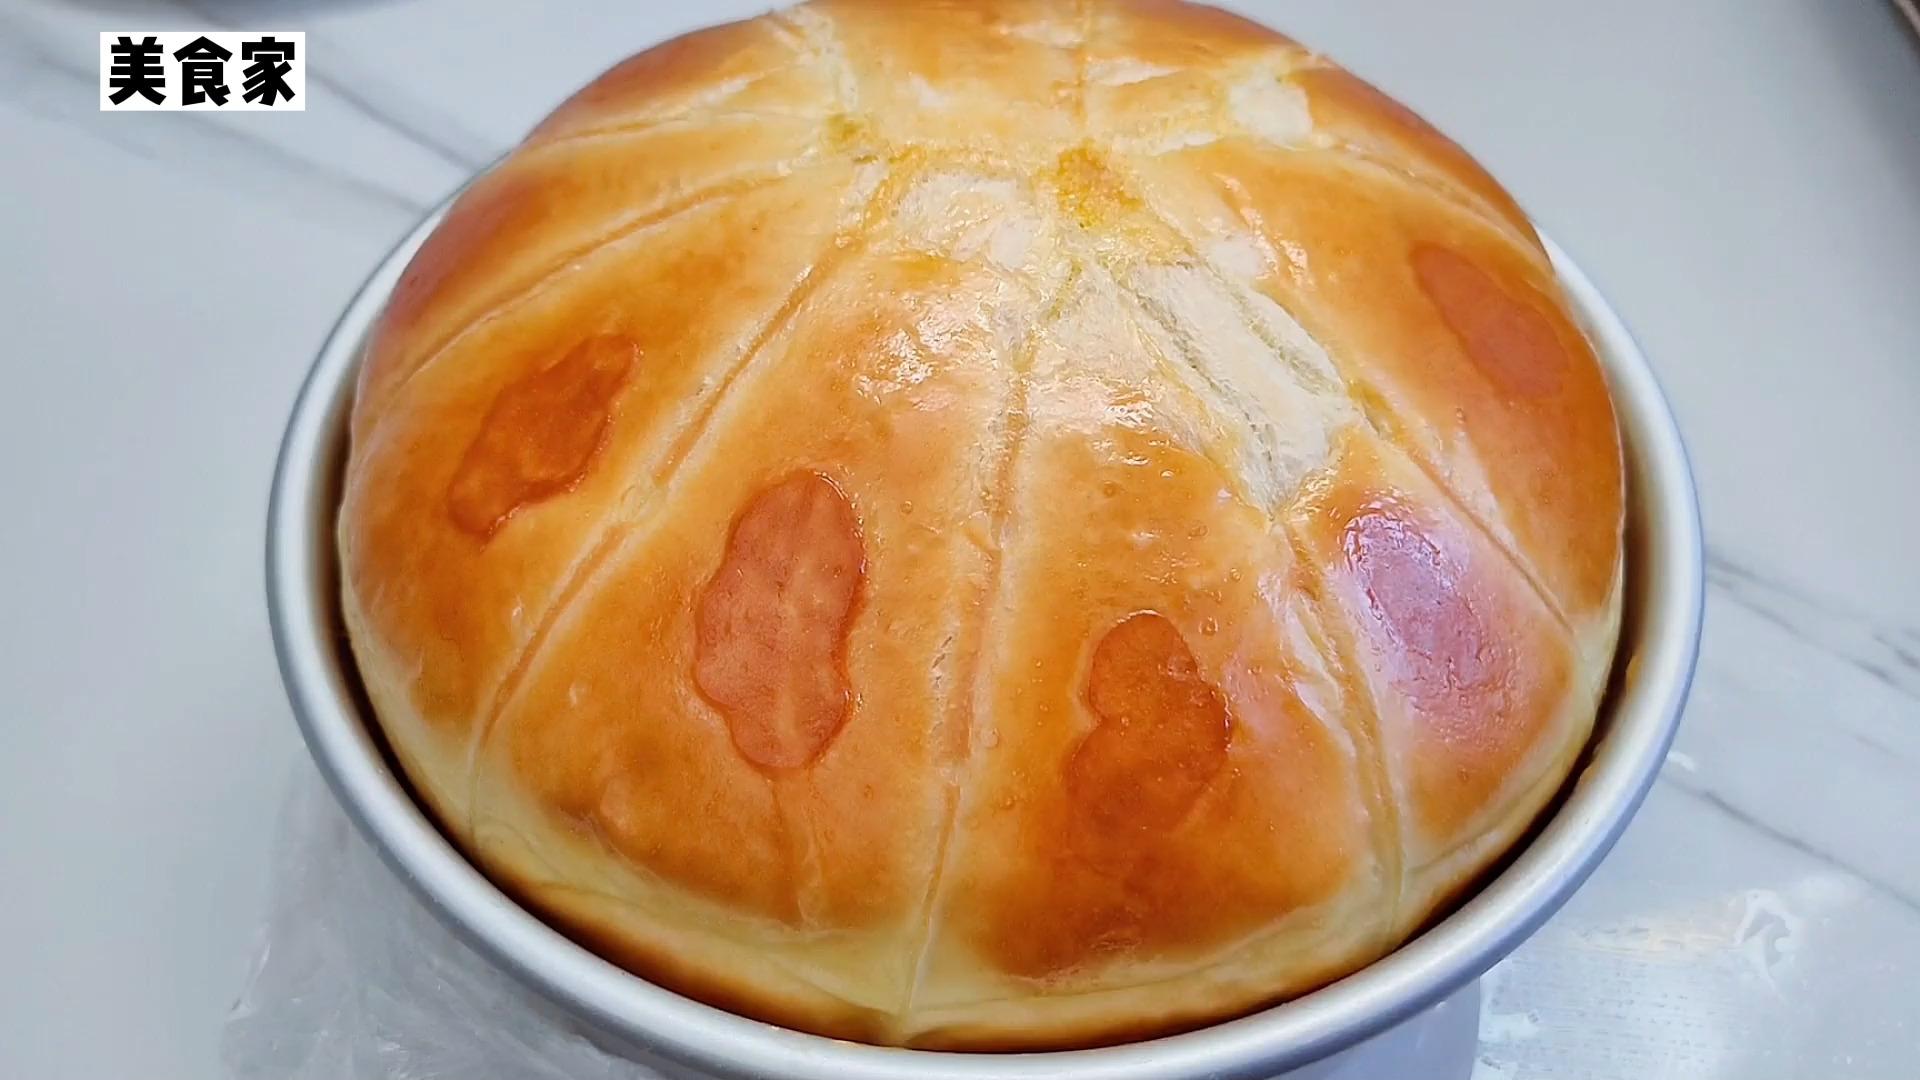 简版蒸面包怎么做_简版蒸面包的做法_豆果美食